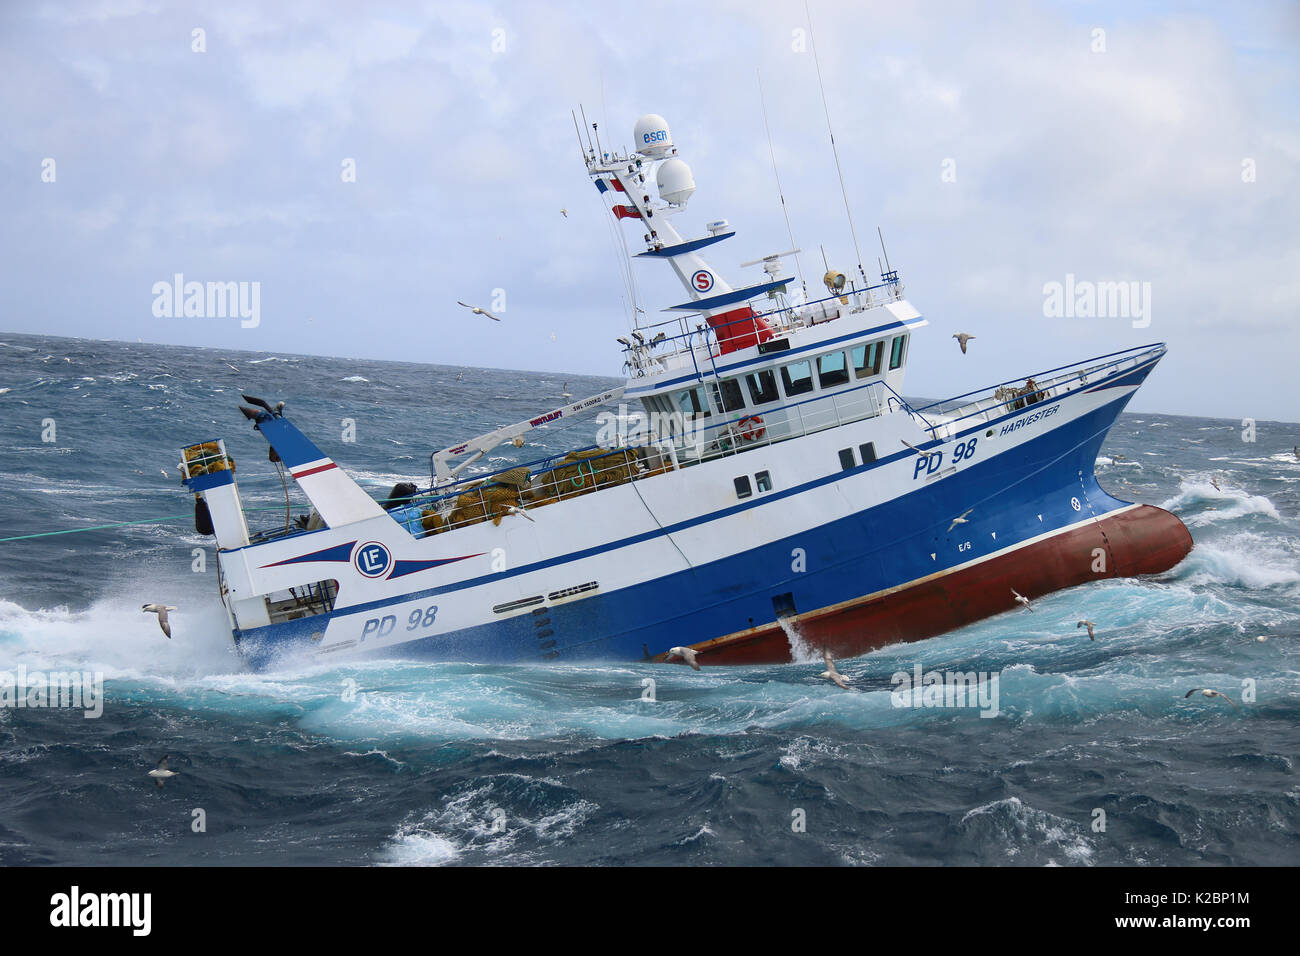 Bateau de pêche 'Harvester' jusqu'attrape son chalut. Mer du Nord. En juillet 2015. Parution de la propriété. Banque D'Images